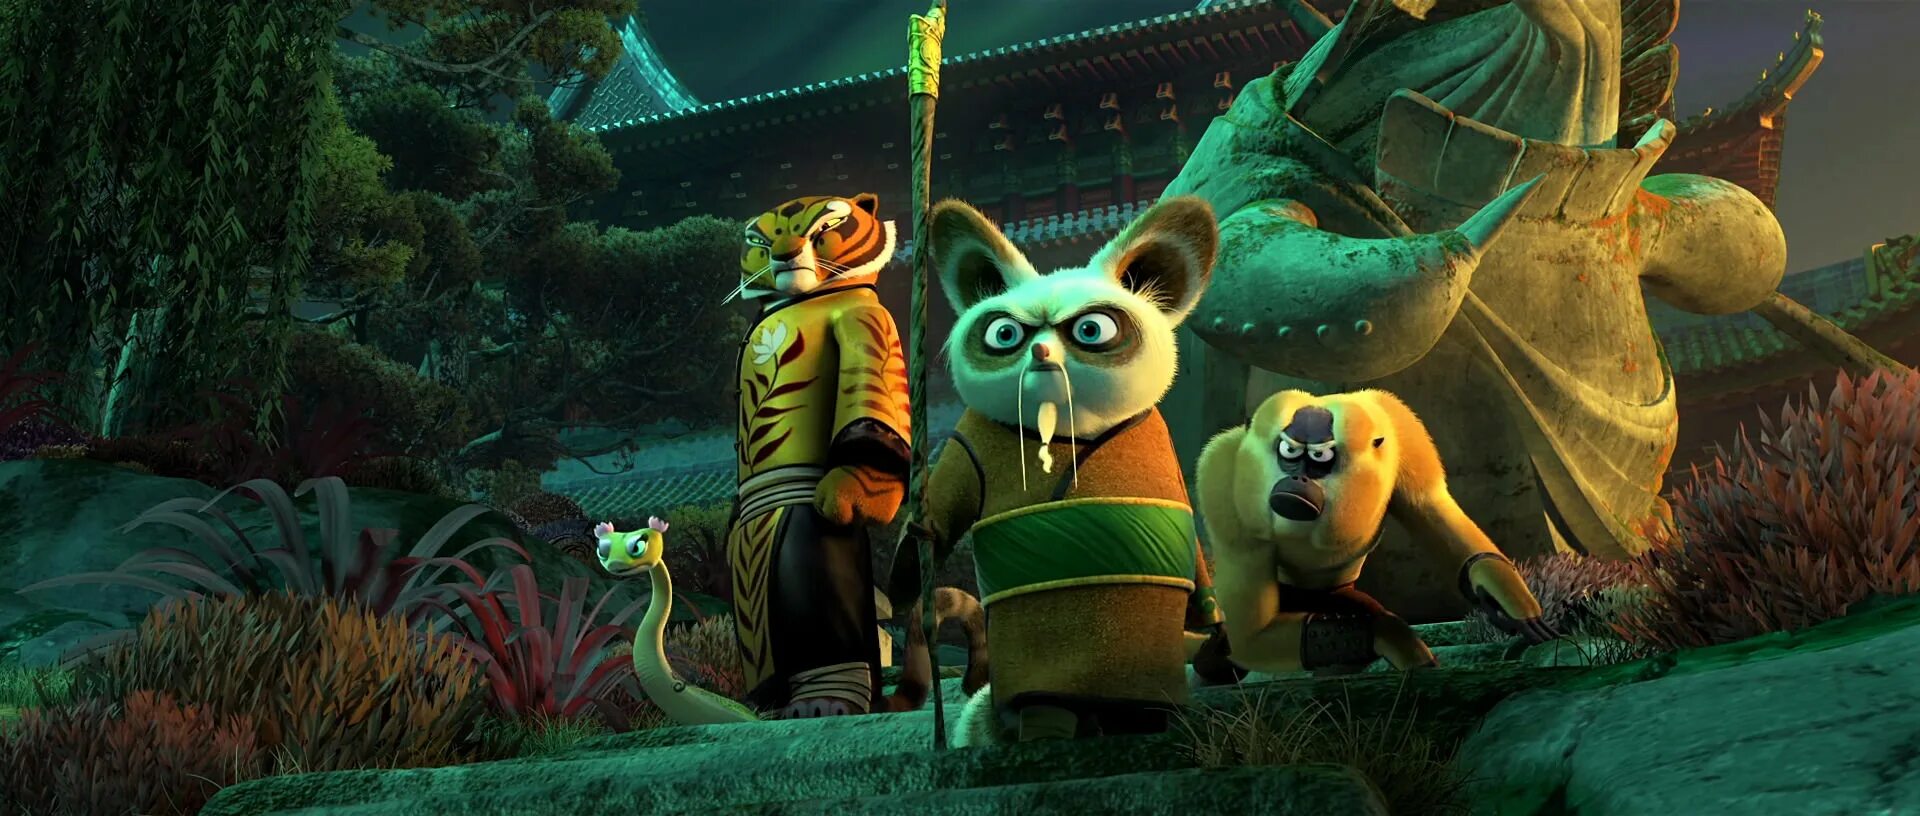 Kungfu panda 3. Кунг фу Панда. Кунг фу Панда 3. Кунг-фу Панда 3 (2016).